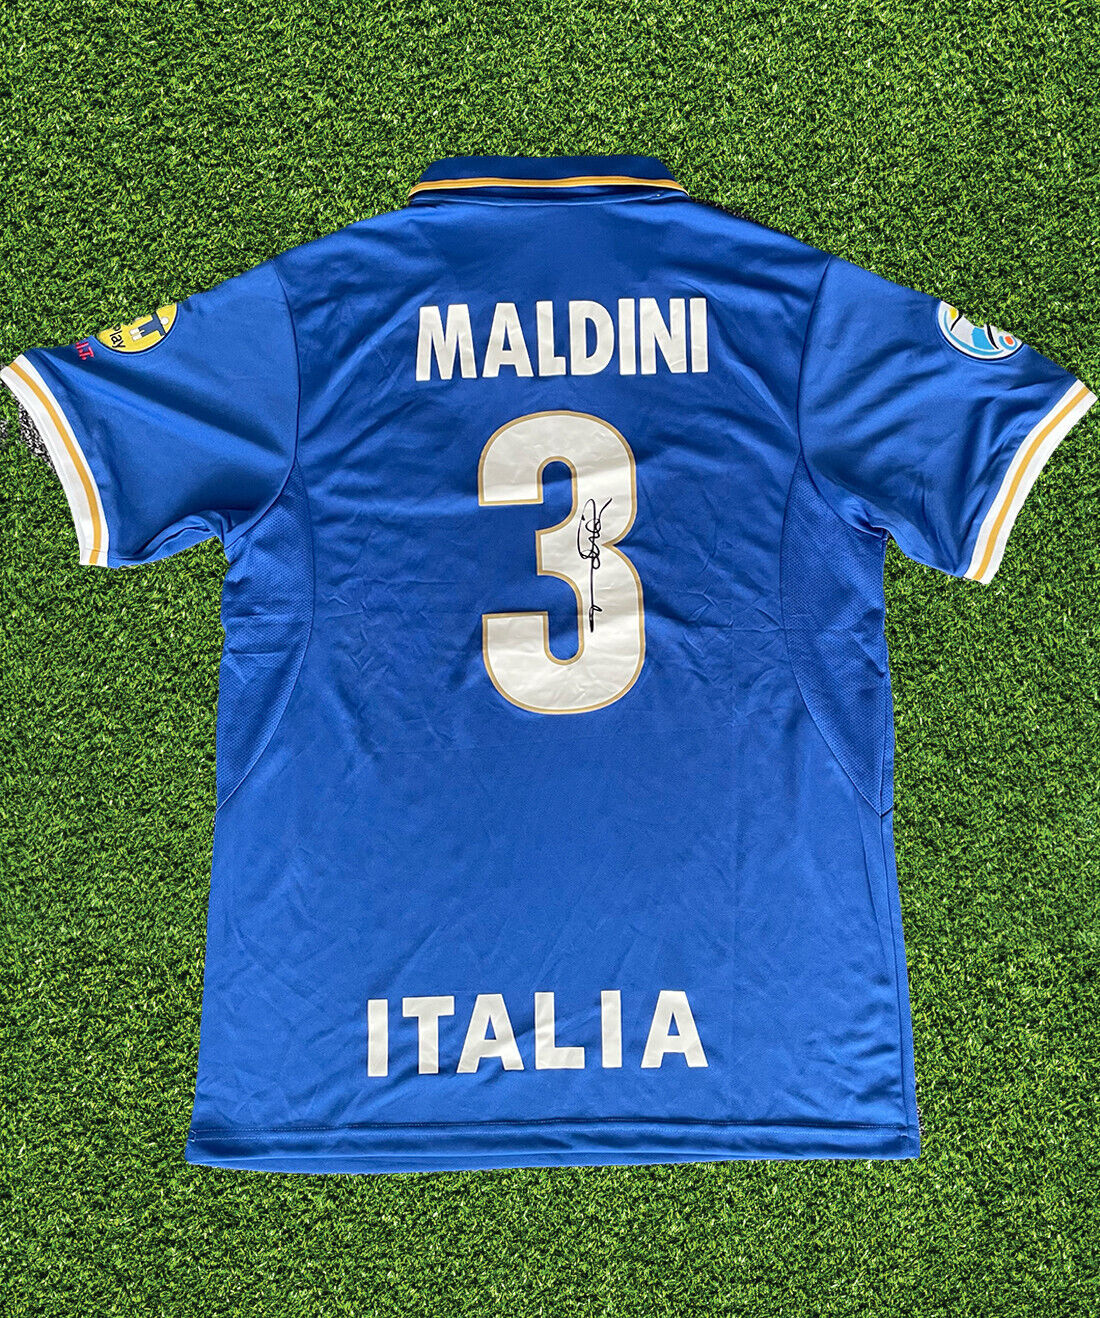 PAOLO MALDINI SIGNED RETRO ITALY EURO 1996 SHIRT (AFTAL COA)